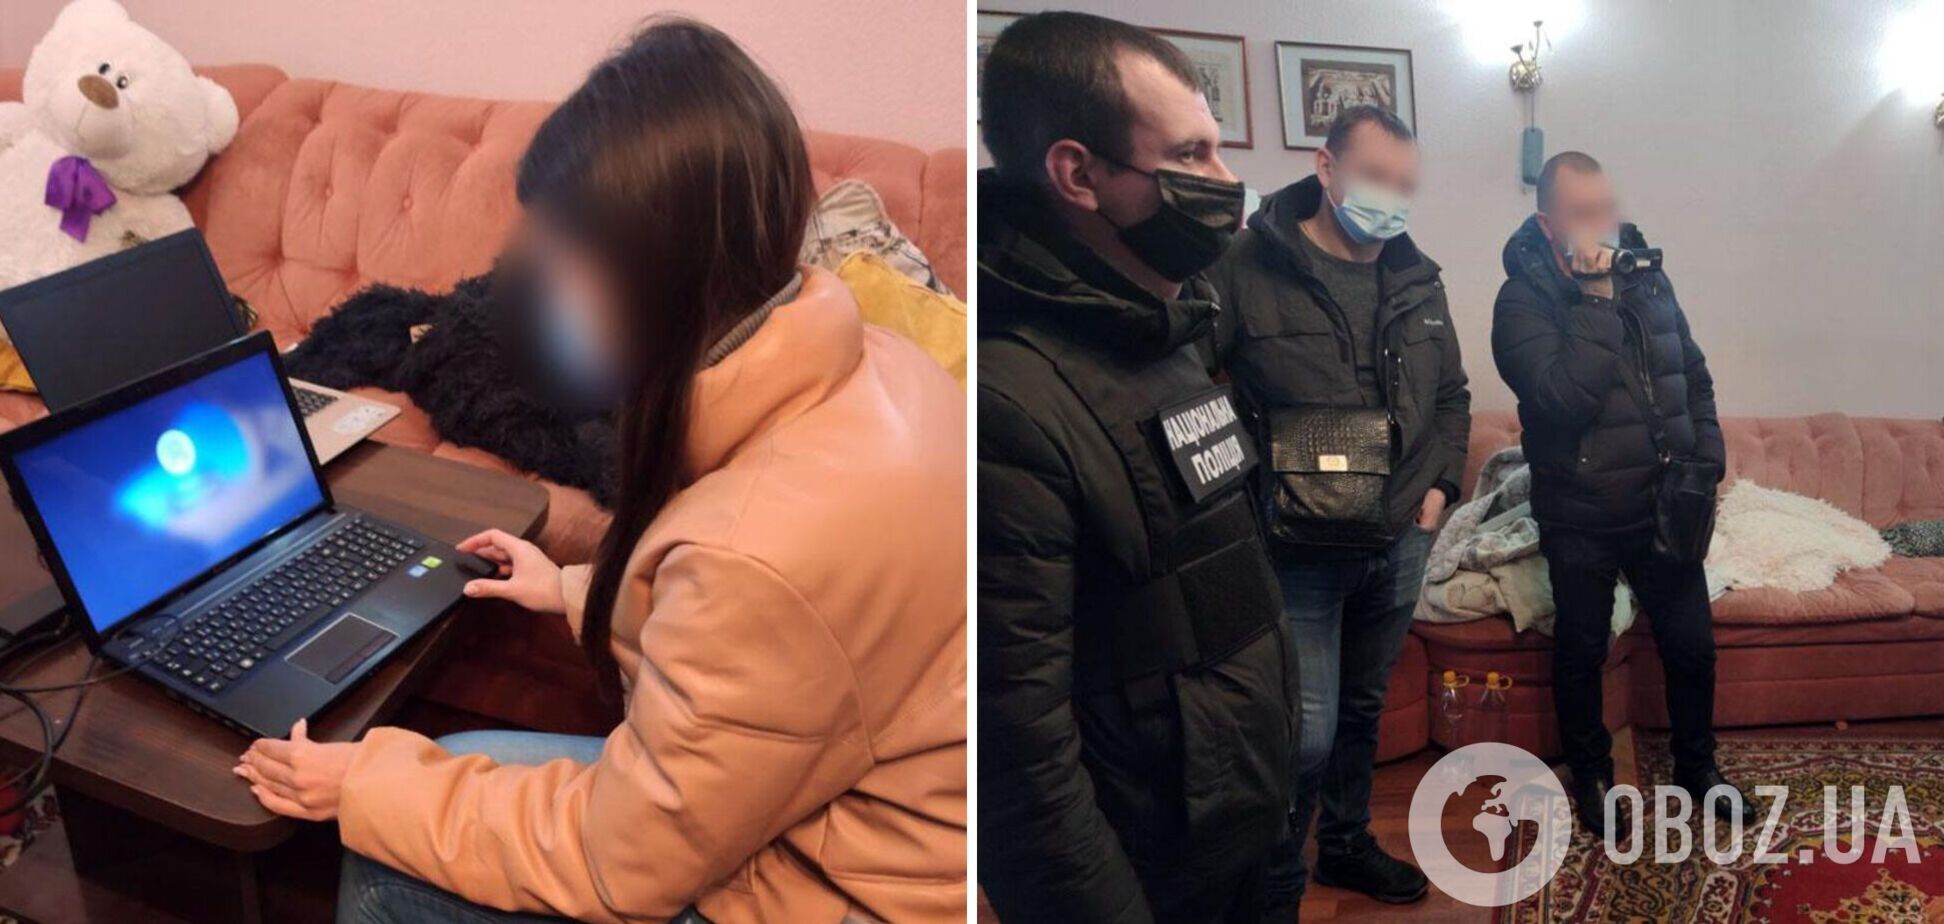 В Донецкой области разоблачили двух девушек и парня в съемках порнографии: им грозит лишение свободы